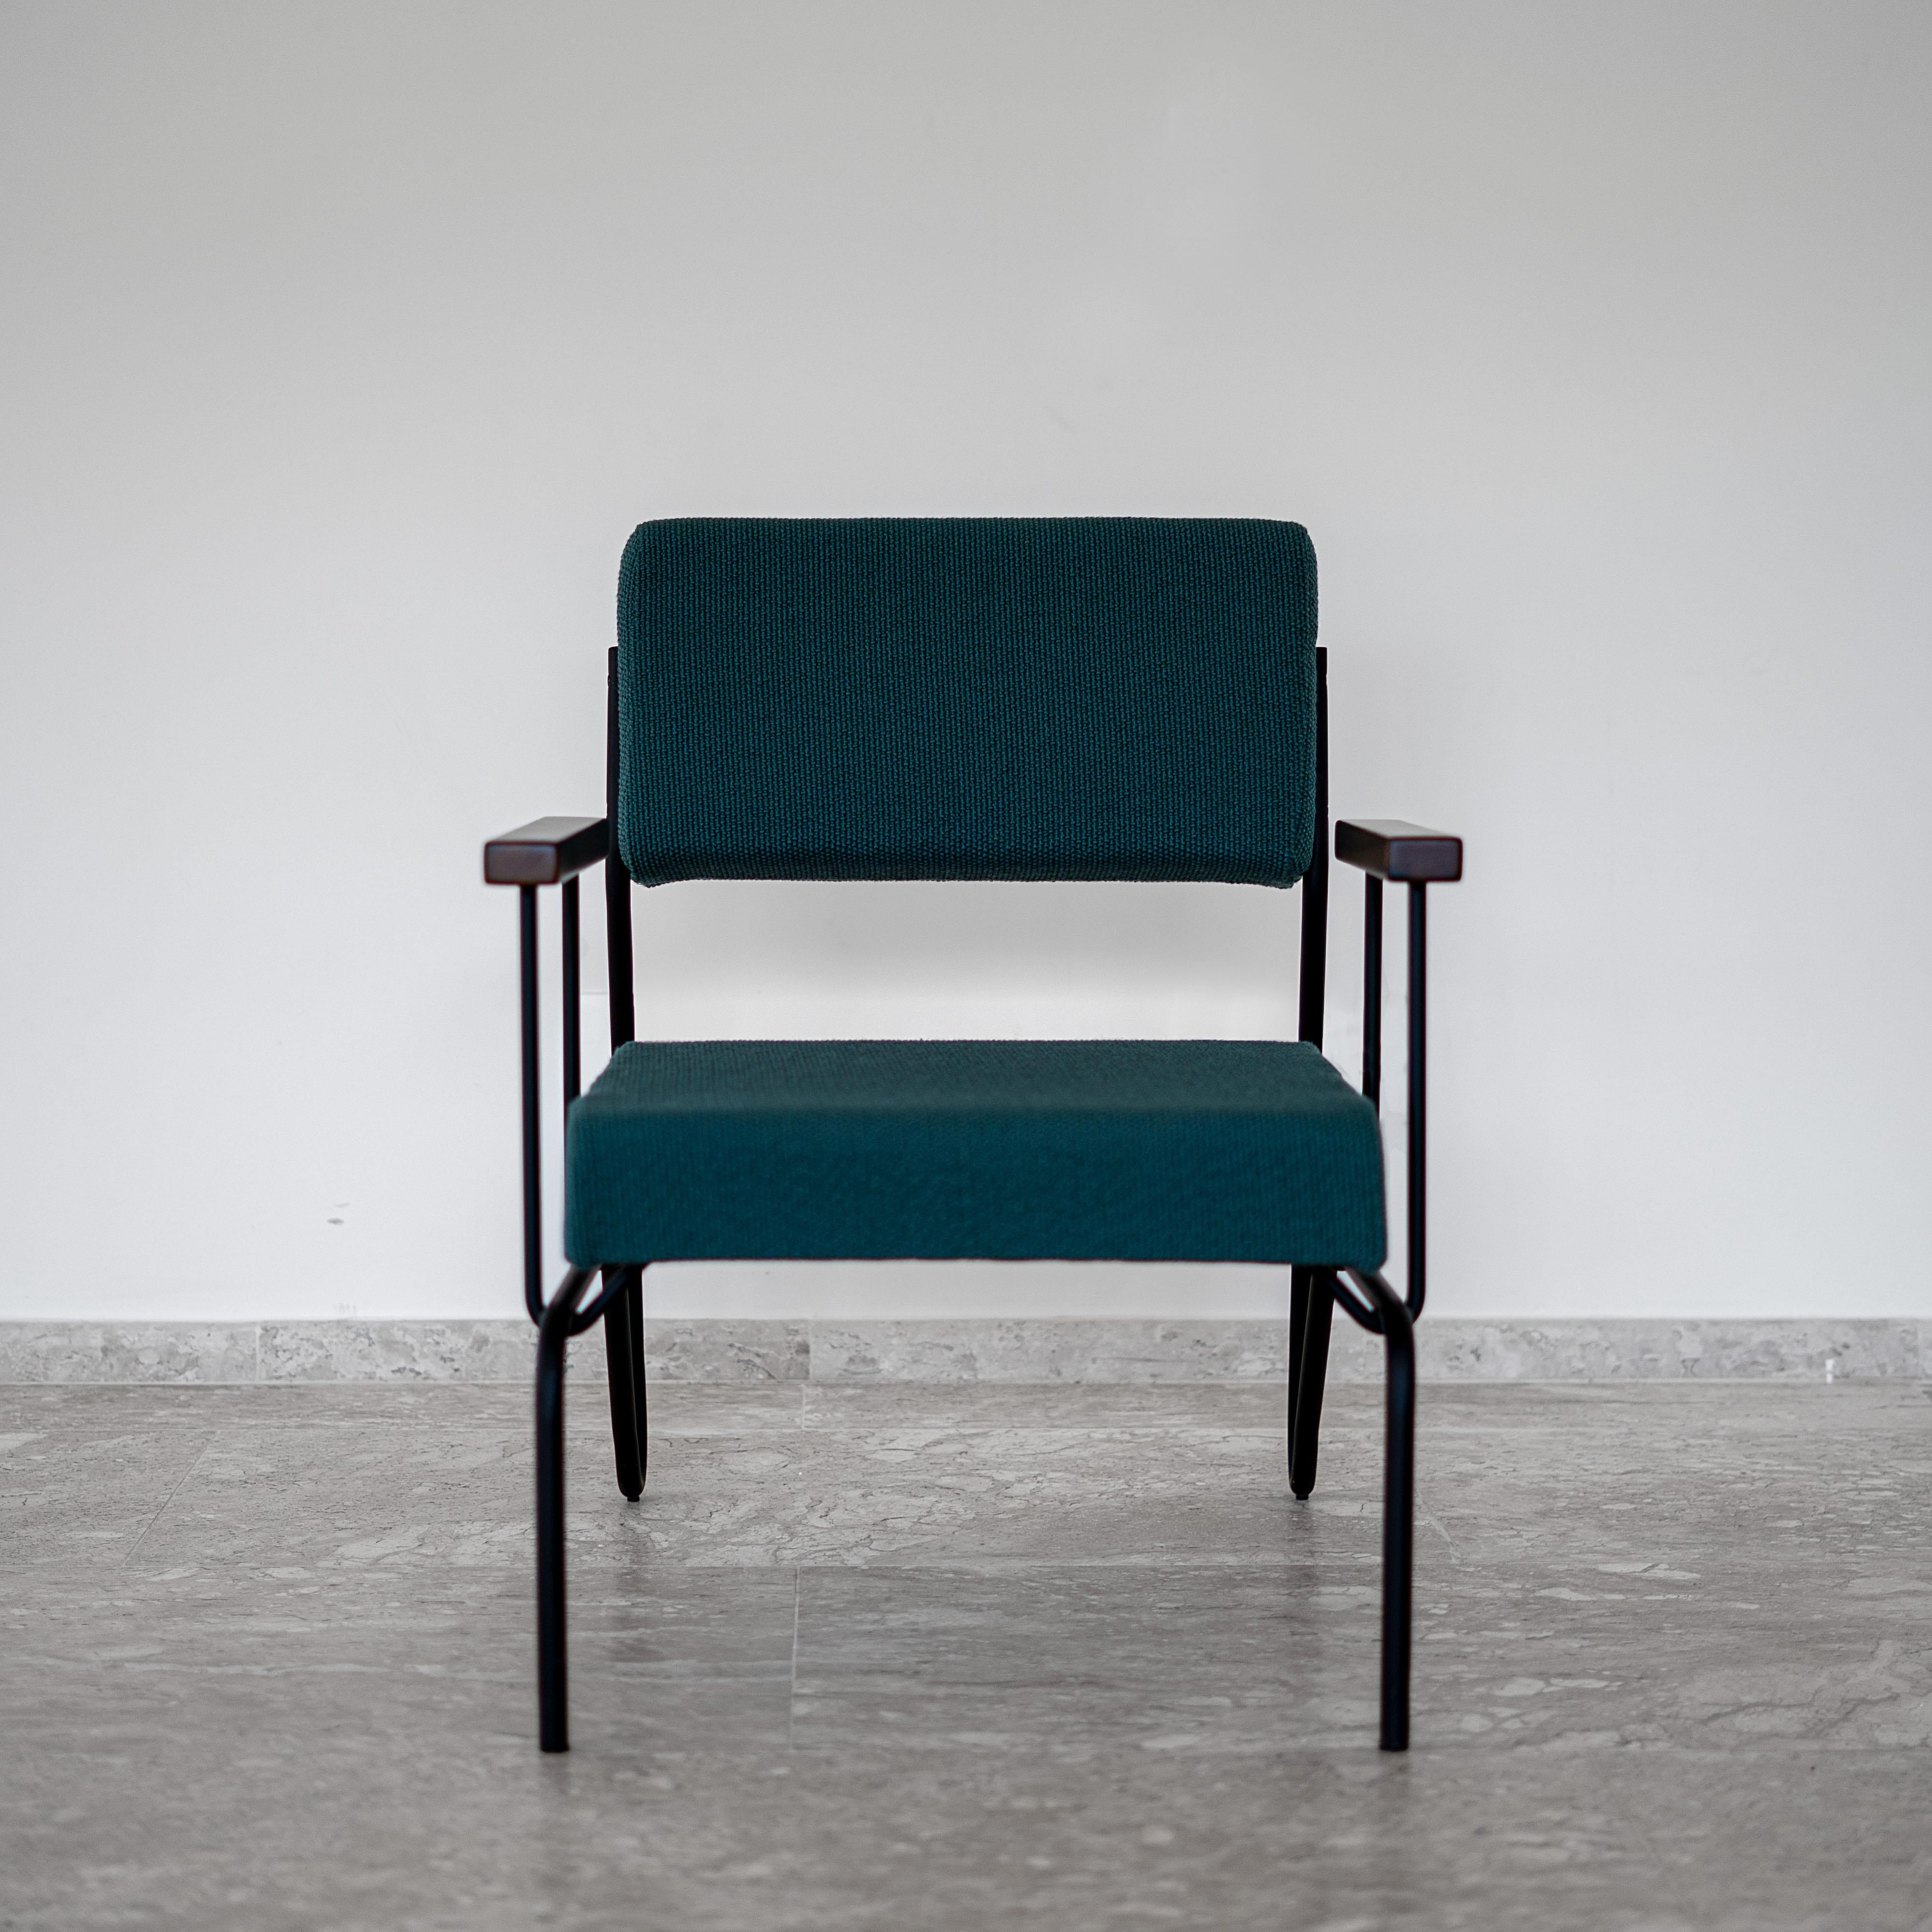 Ce fauteuil minimaliste primé en acier, bois massif et cuir est conçu avec un raisonnement classique et géométrique. 
La continuité des lignes structurelles suggère la fluidité. Le dossier permet un mouvement fluide et, tout comme l'assise, il se